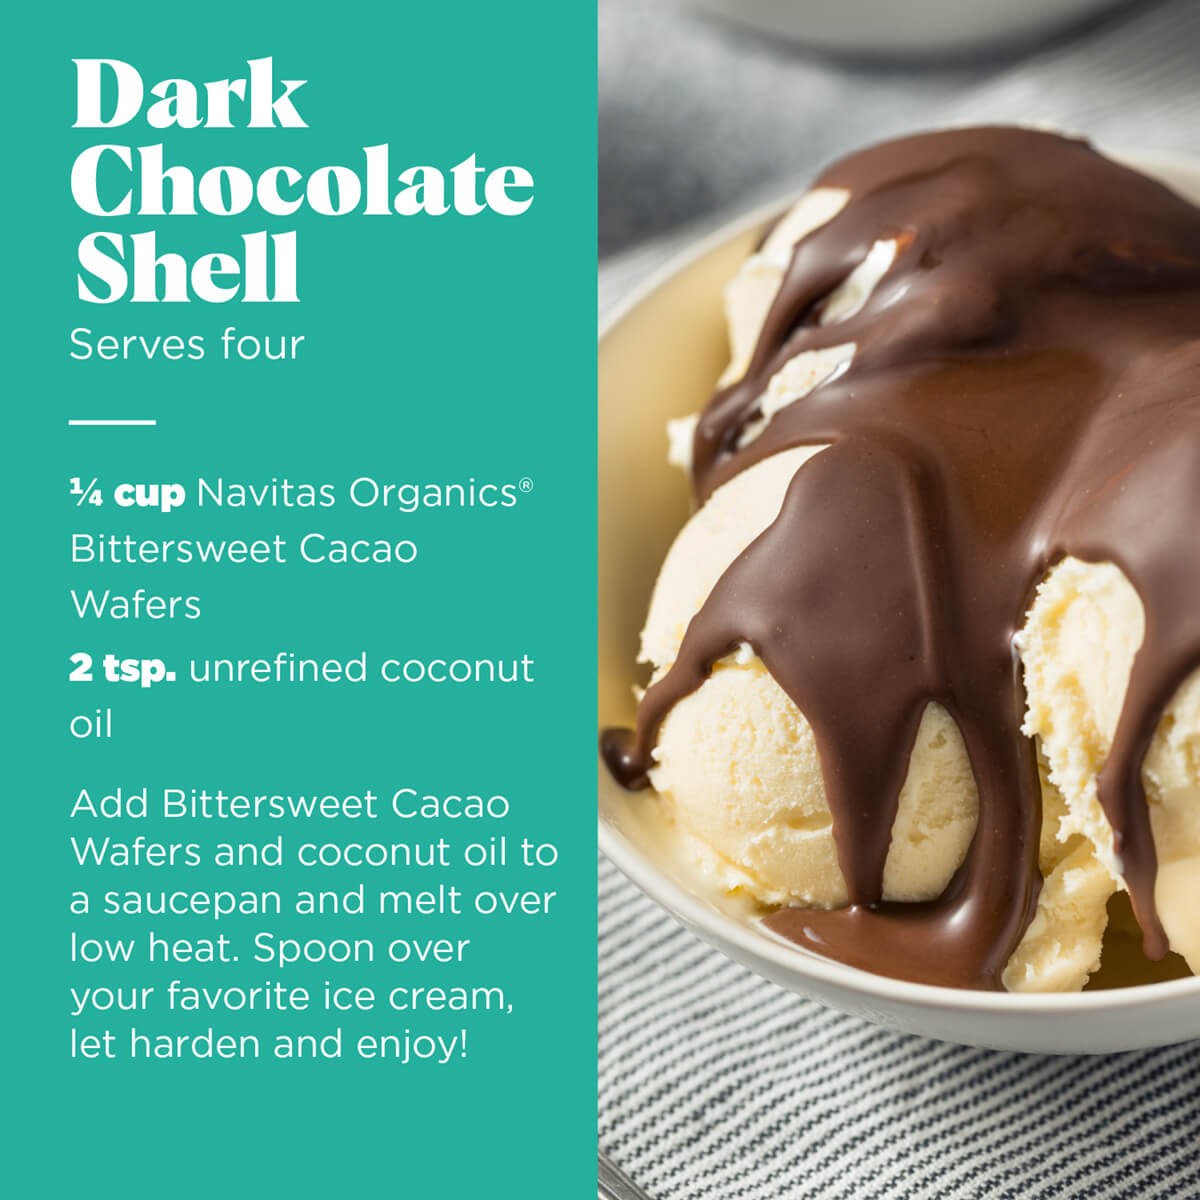 Dark chocolate shell recipe using Navitas Organics Bittersweet Cacao Wafers.